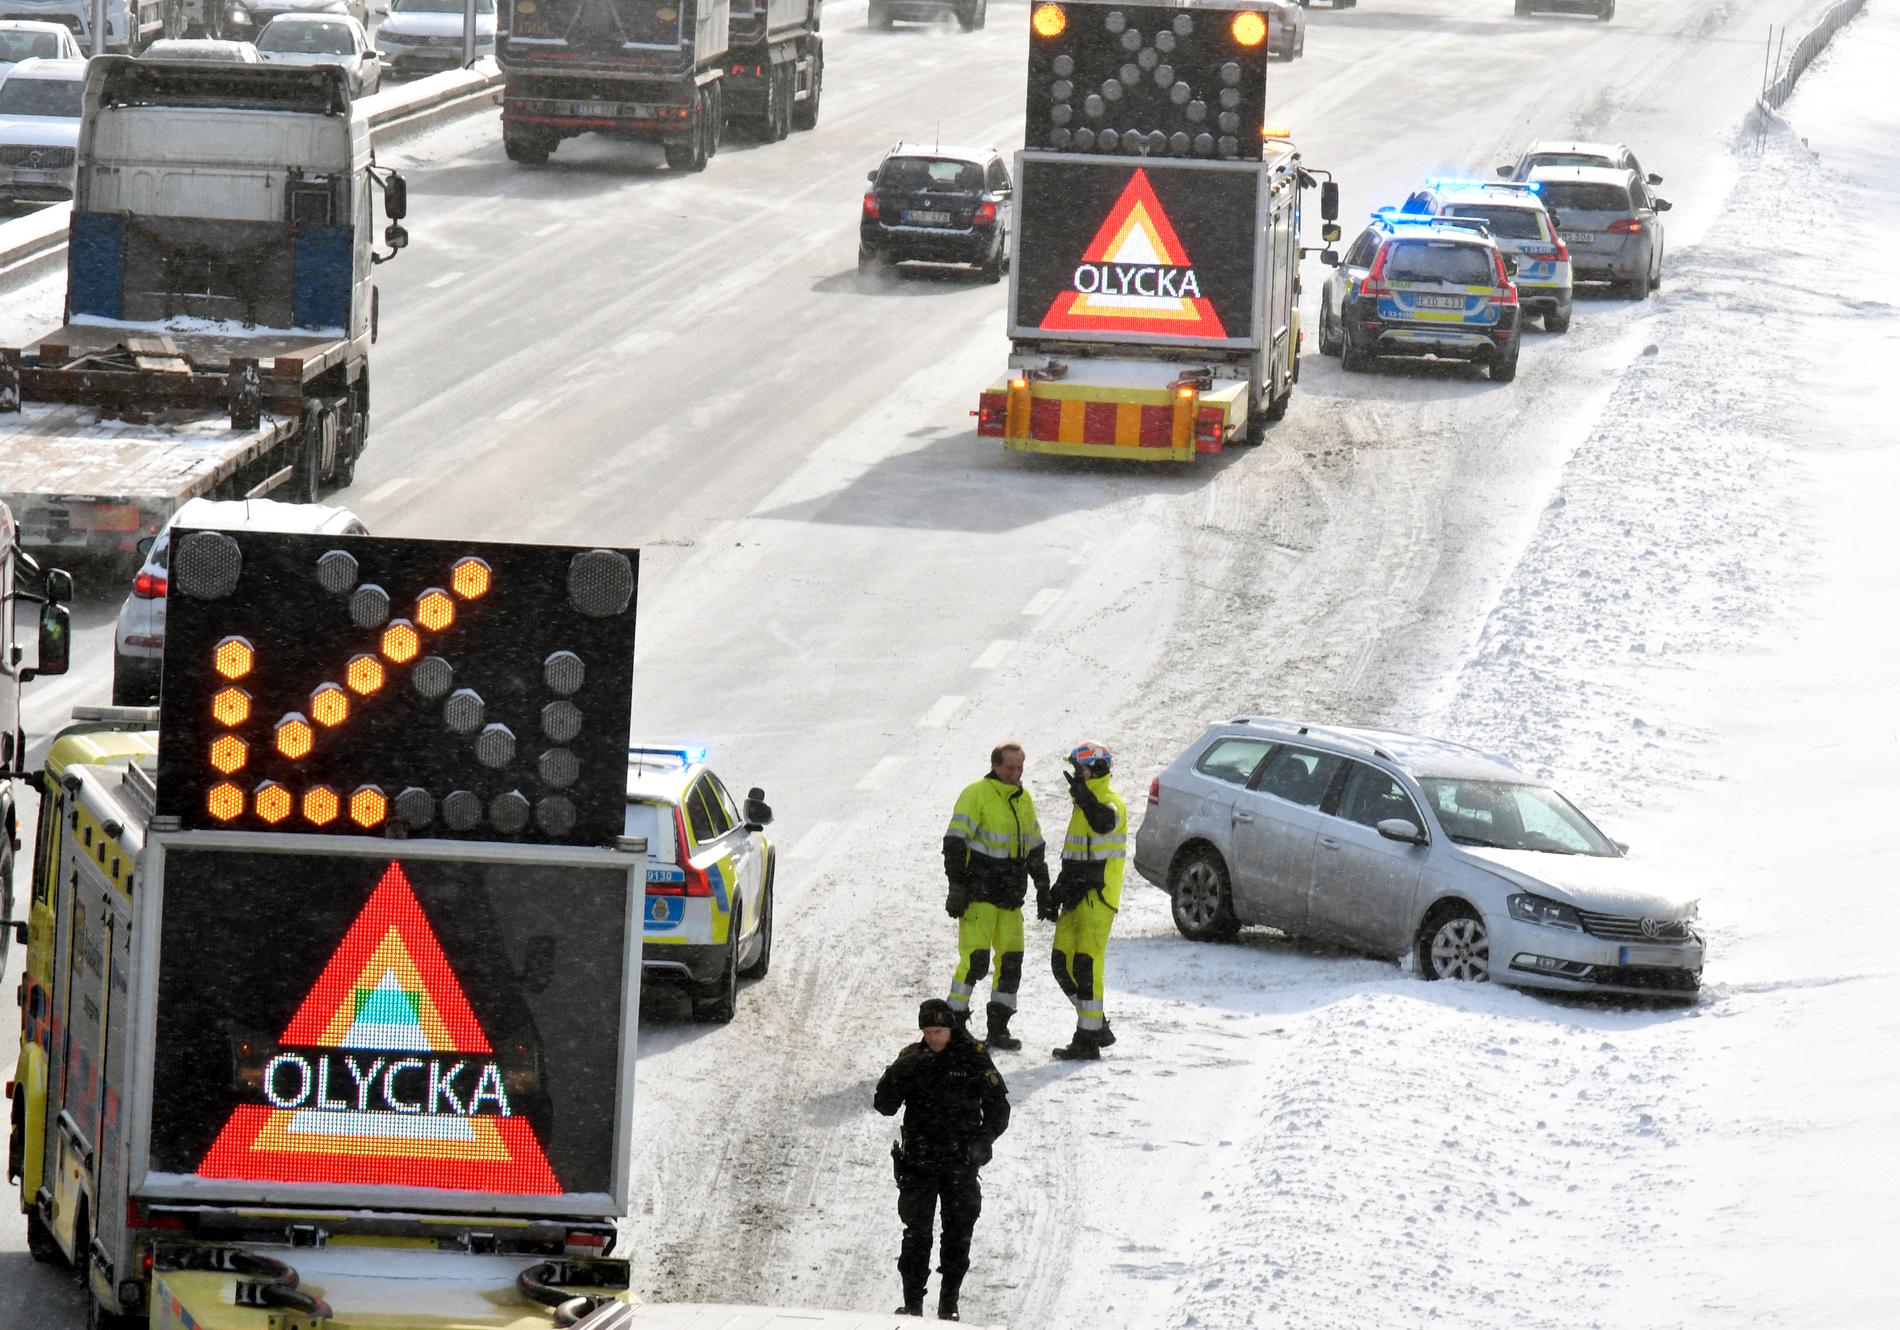 Olycka vid Häggvik, Stockholm.